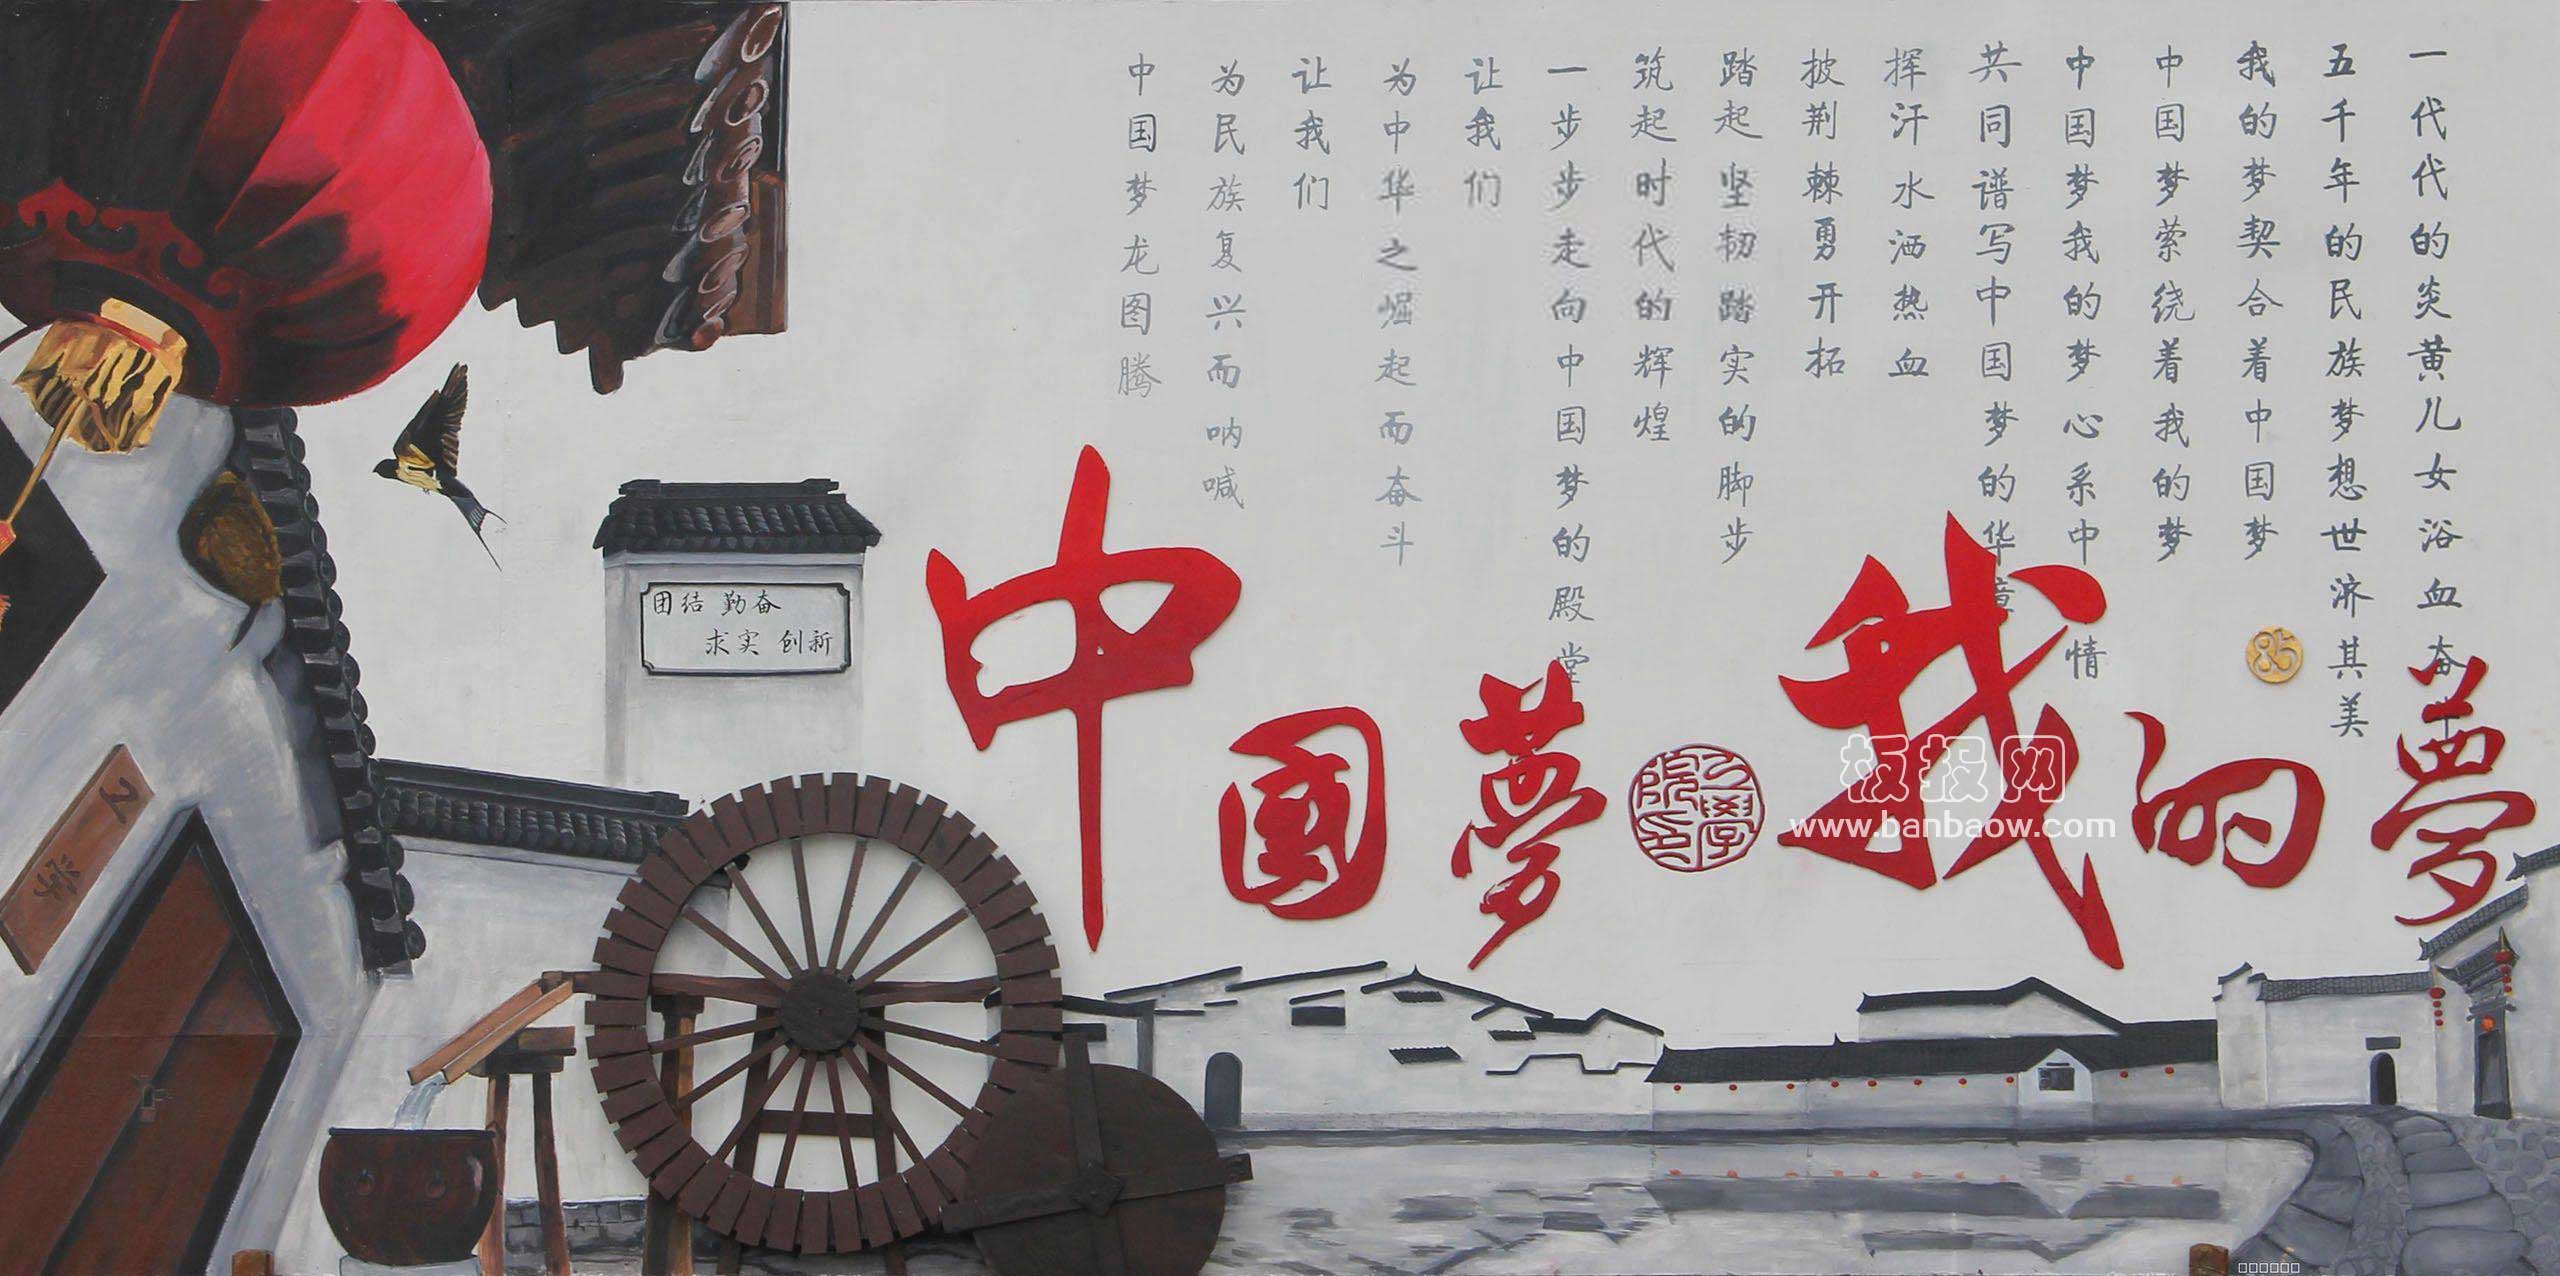 非常漂亮的中国梦我的梦优秀墙报图片大全